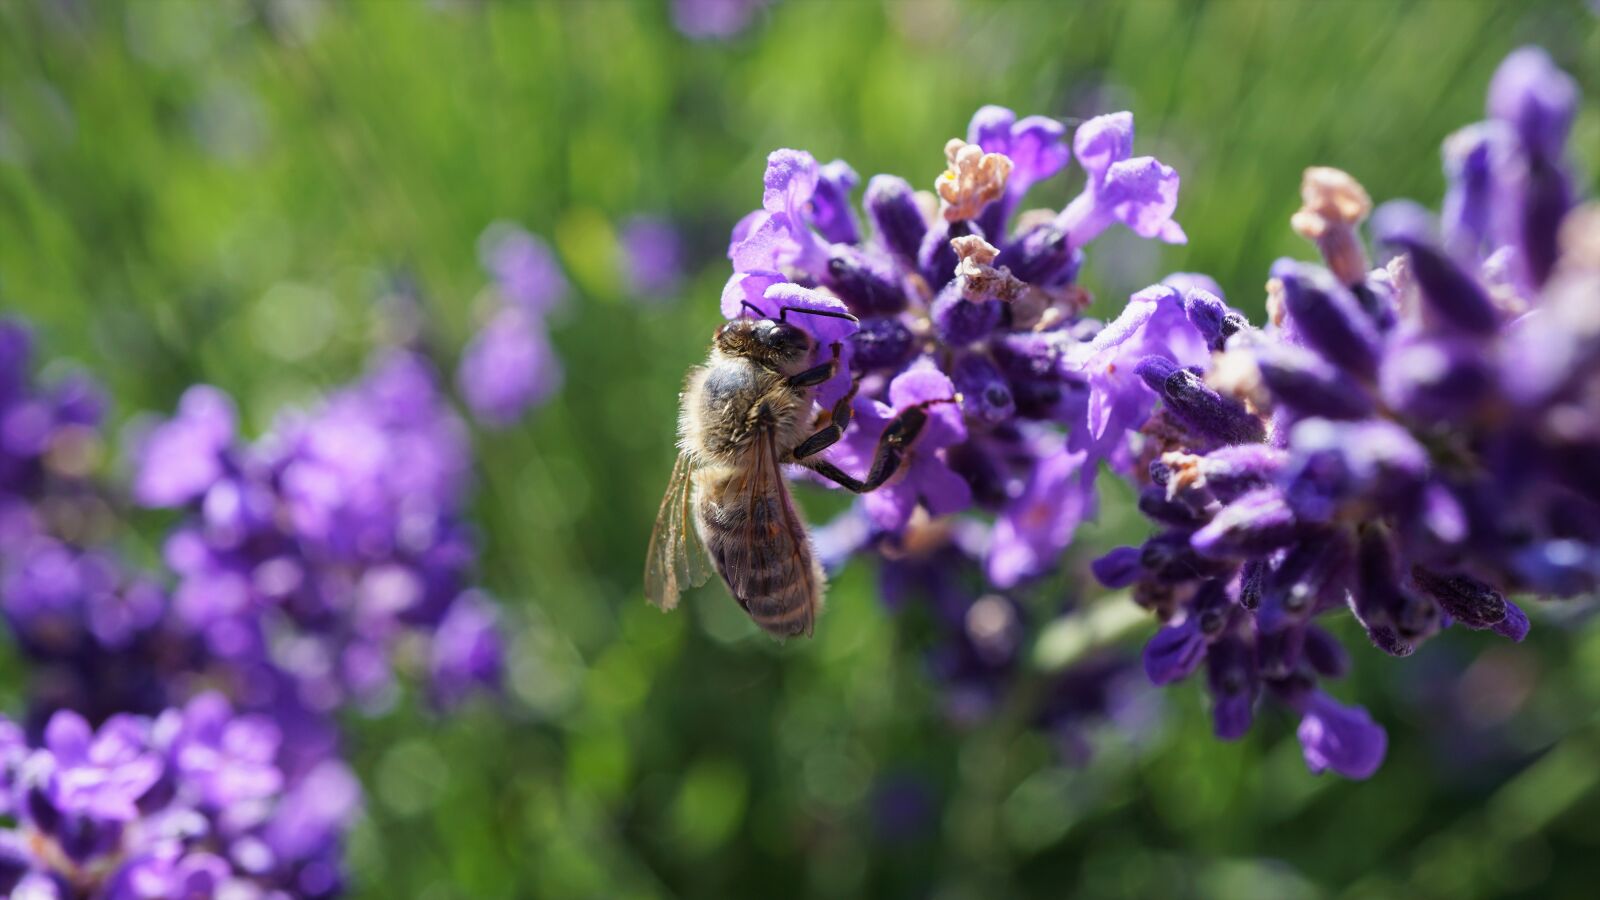 Sony E 30mm F3.5 Macro sample photo. Honey bee, bee, flight photography